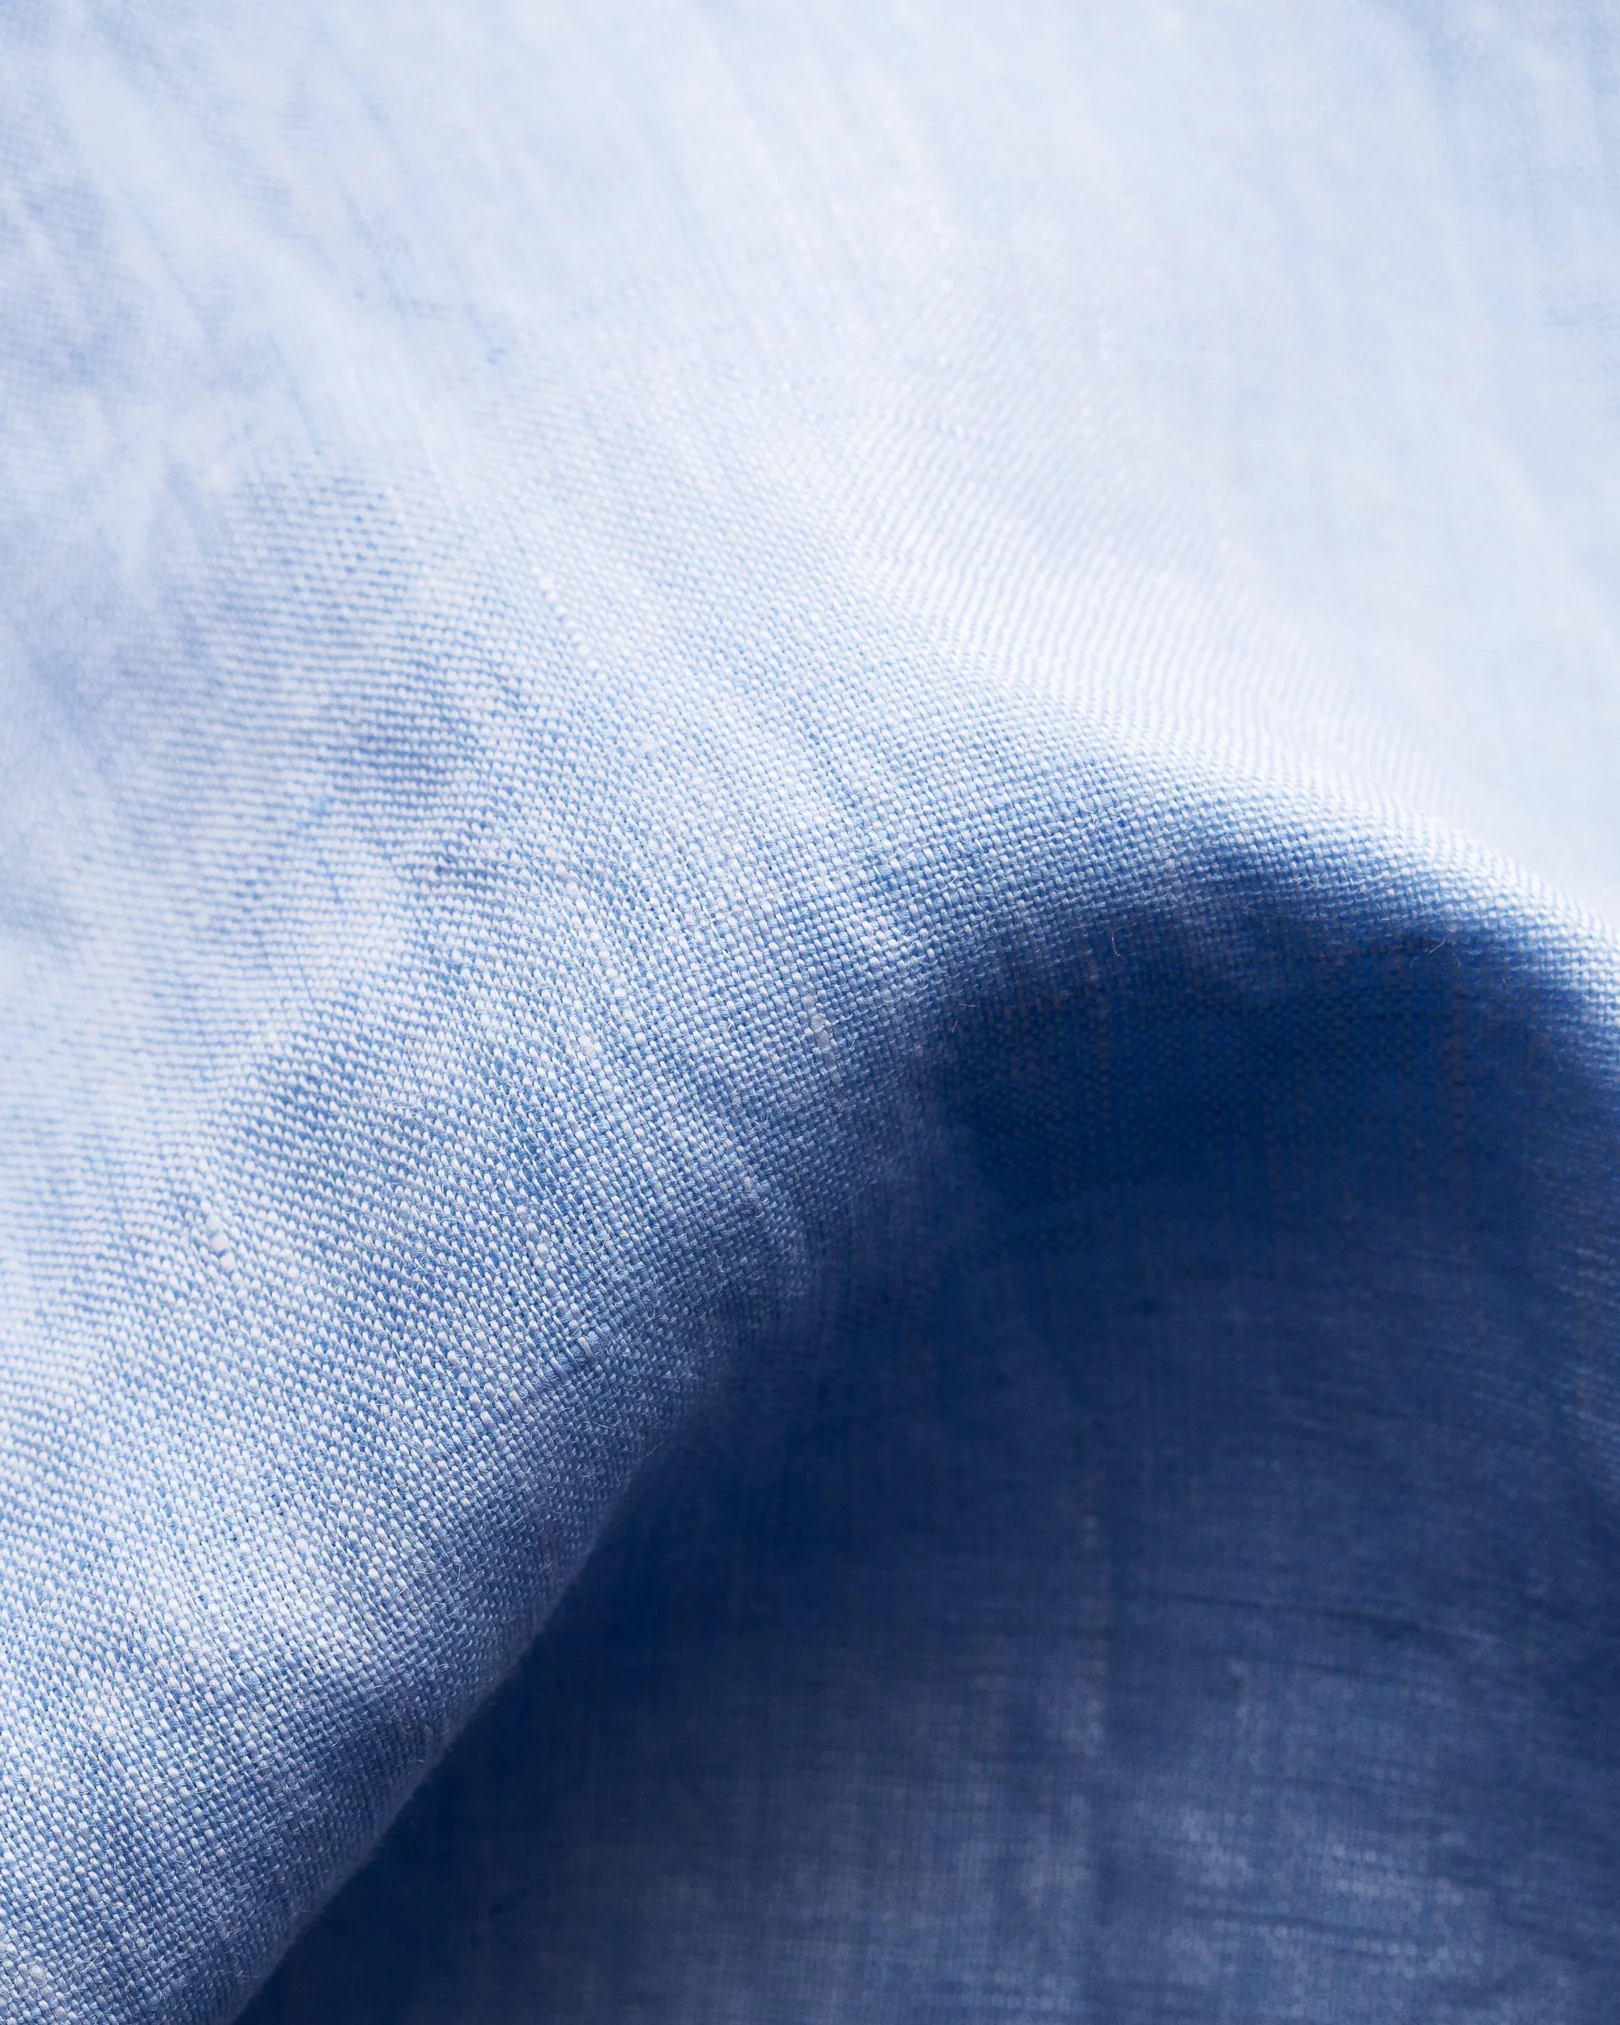 Eton - light blue linen